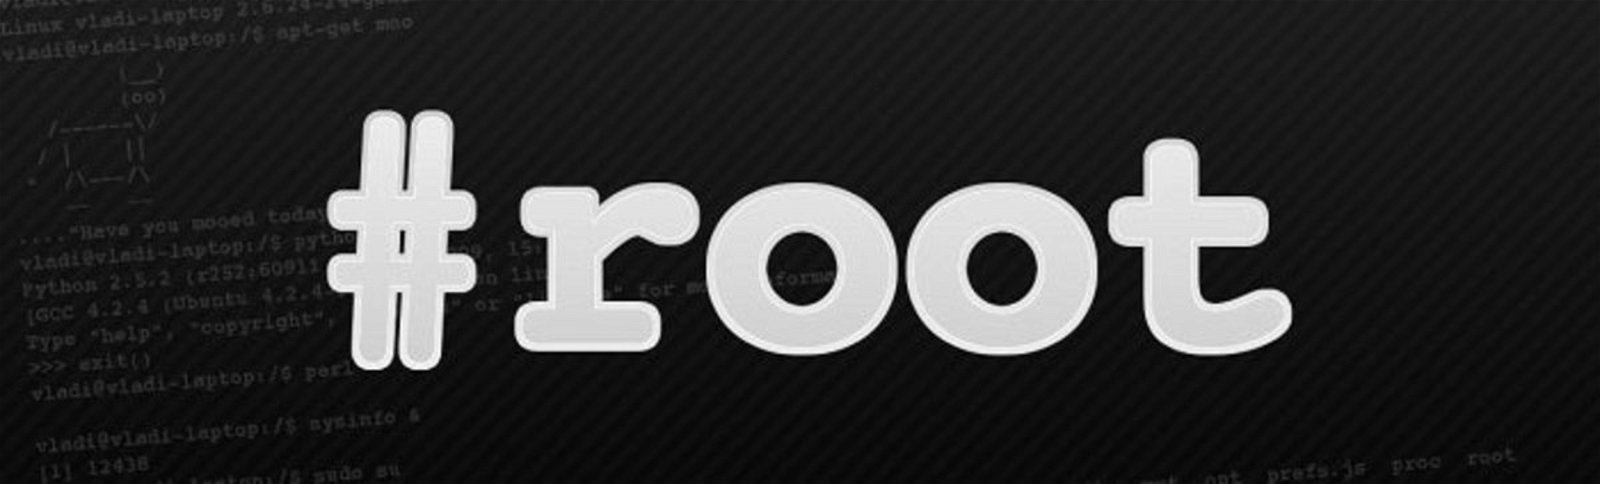 Imagen con el logo de Root